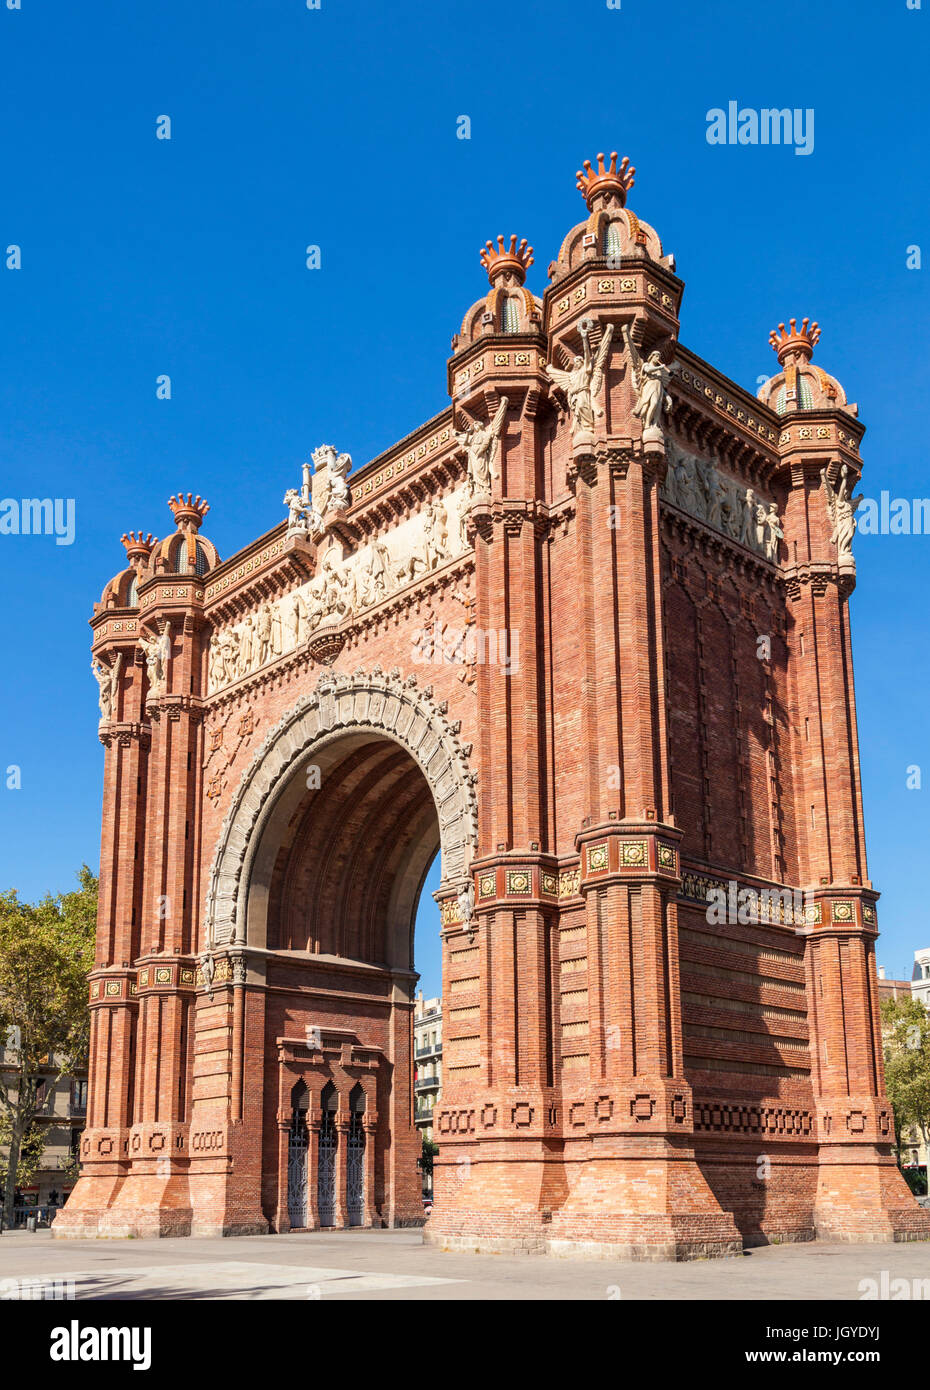 Catalunya de Barcelone l'Arc de Triomf de Barcelone Arco de Triunfo de Barcelona arc de triomphe arc de triomphe de Barcelone Espagne eu Europe Catalogne Banque D'Images